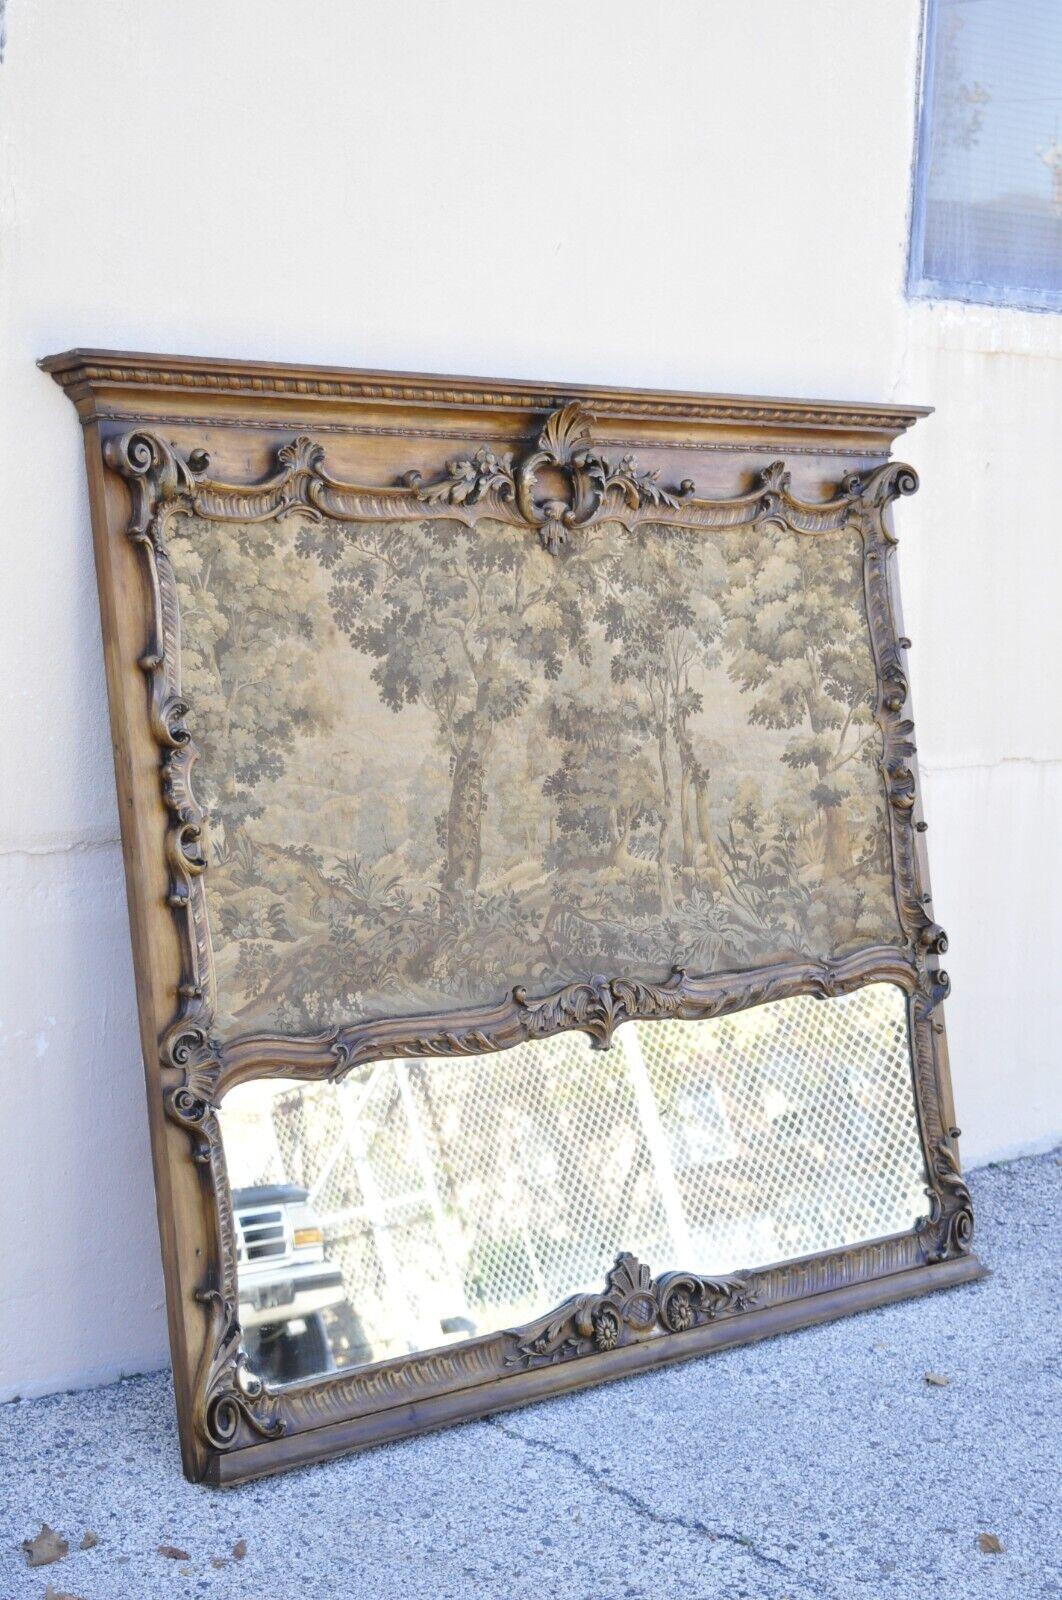 Grand miroir trumeau de style Louis XV avec tapisserie. Cet objet présente une taille impressionnante, un cadre sculpté en relief, une tapisserie française sur la partie supérieure, un miroir central inférieur, un très bel objet ancien, un artisanat